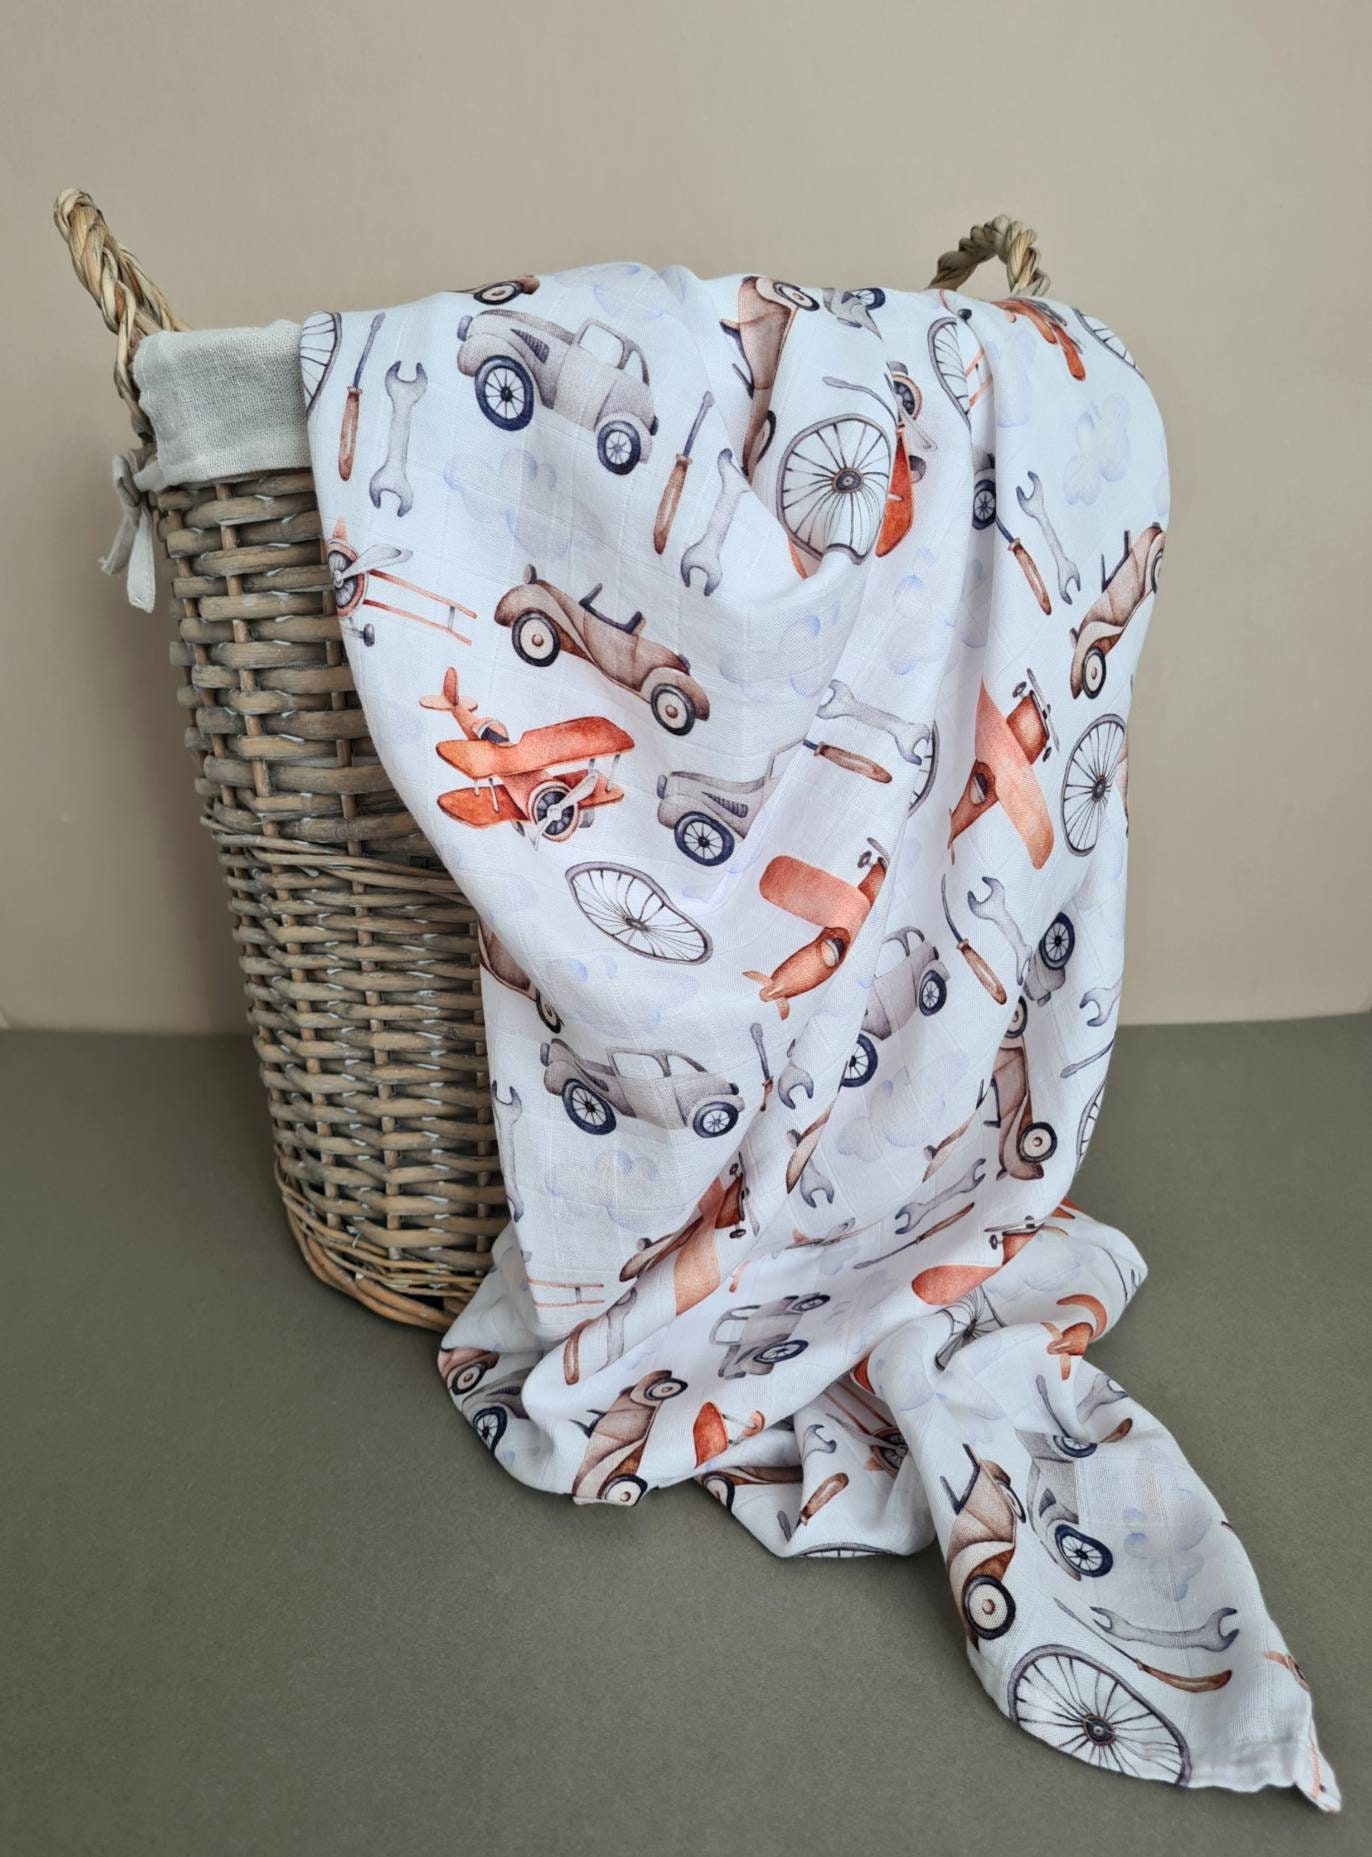 Softan Couverture Bambou bebe pour fille et garçon, Langes bébé  mousseline,120cm x 120cm, pack de 4